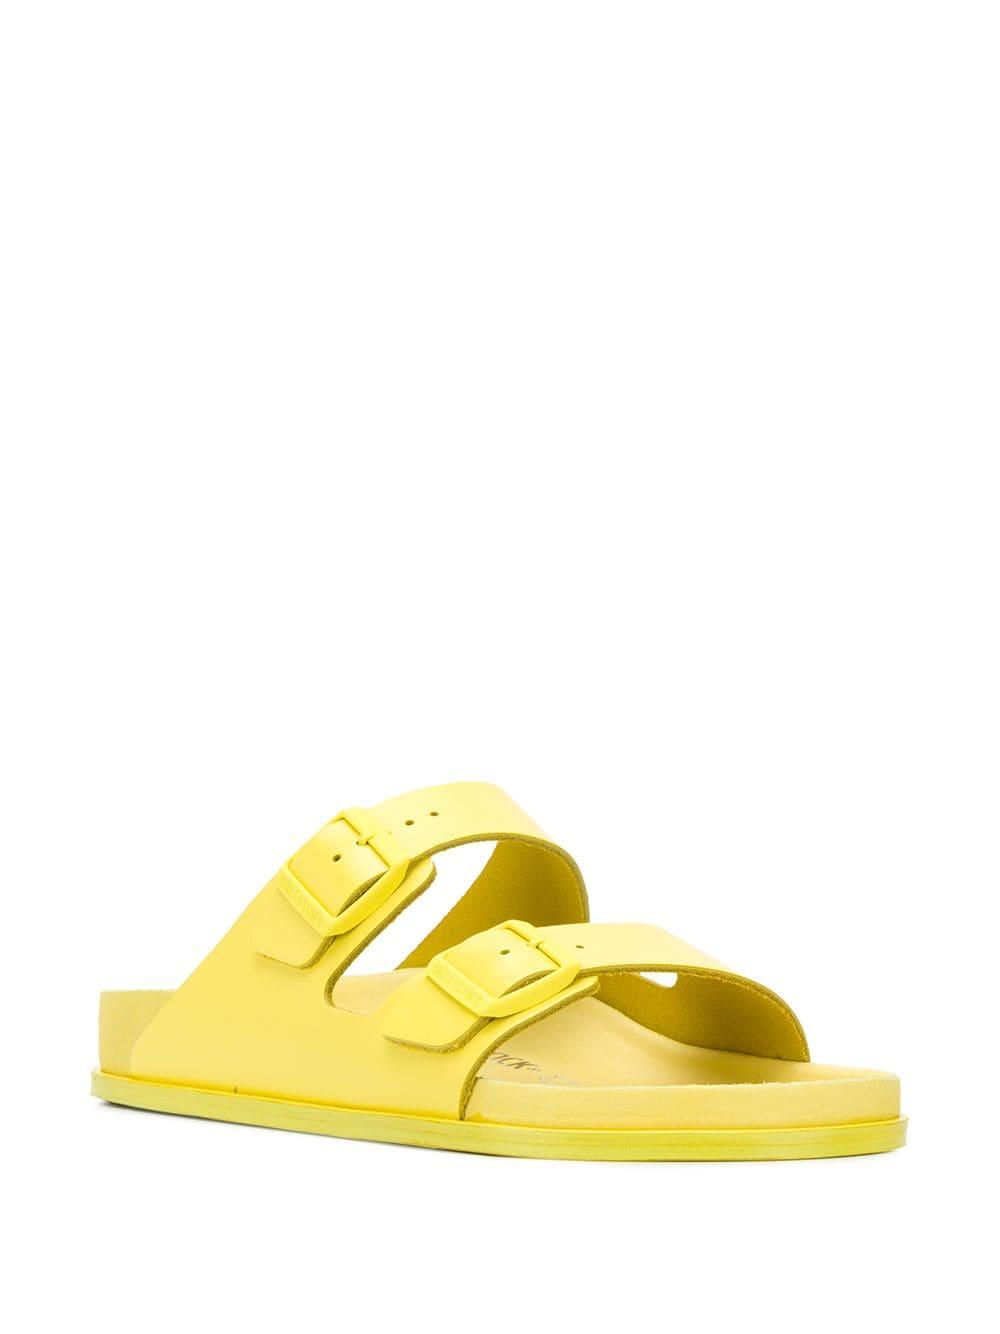 Birkenstock Leather Premium Sandals in Yellow for Men - Lyst